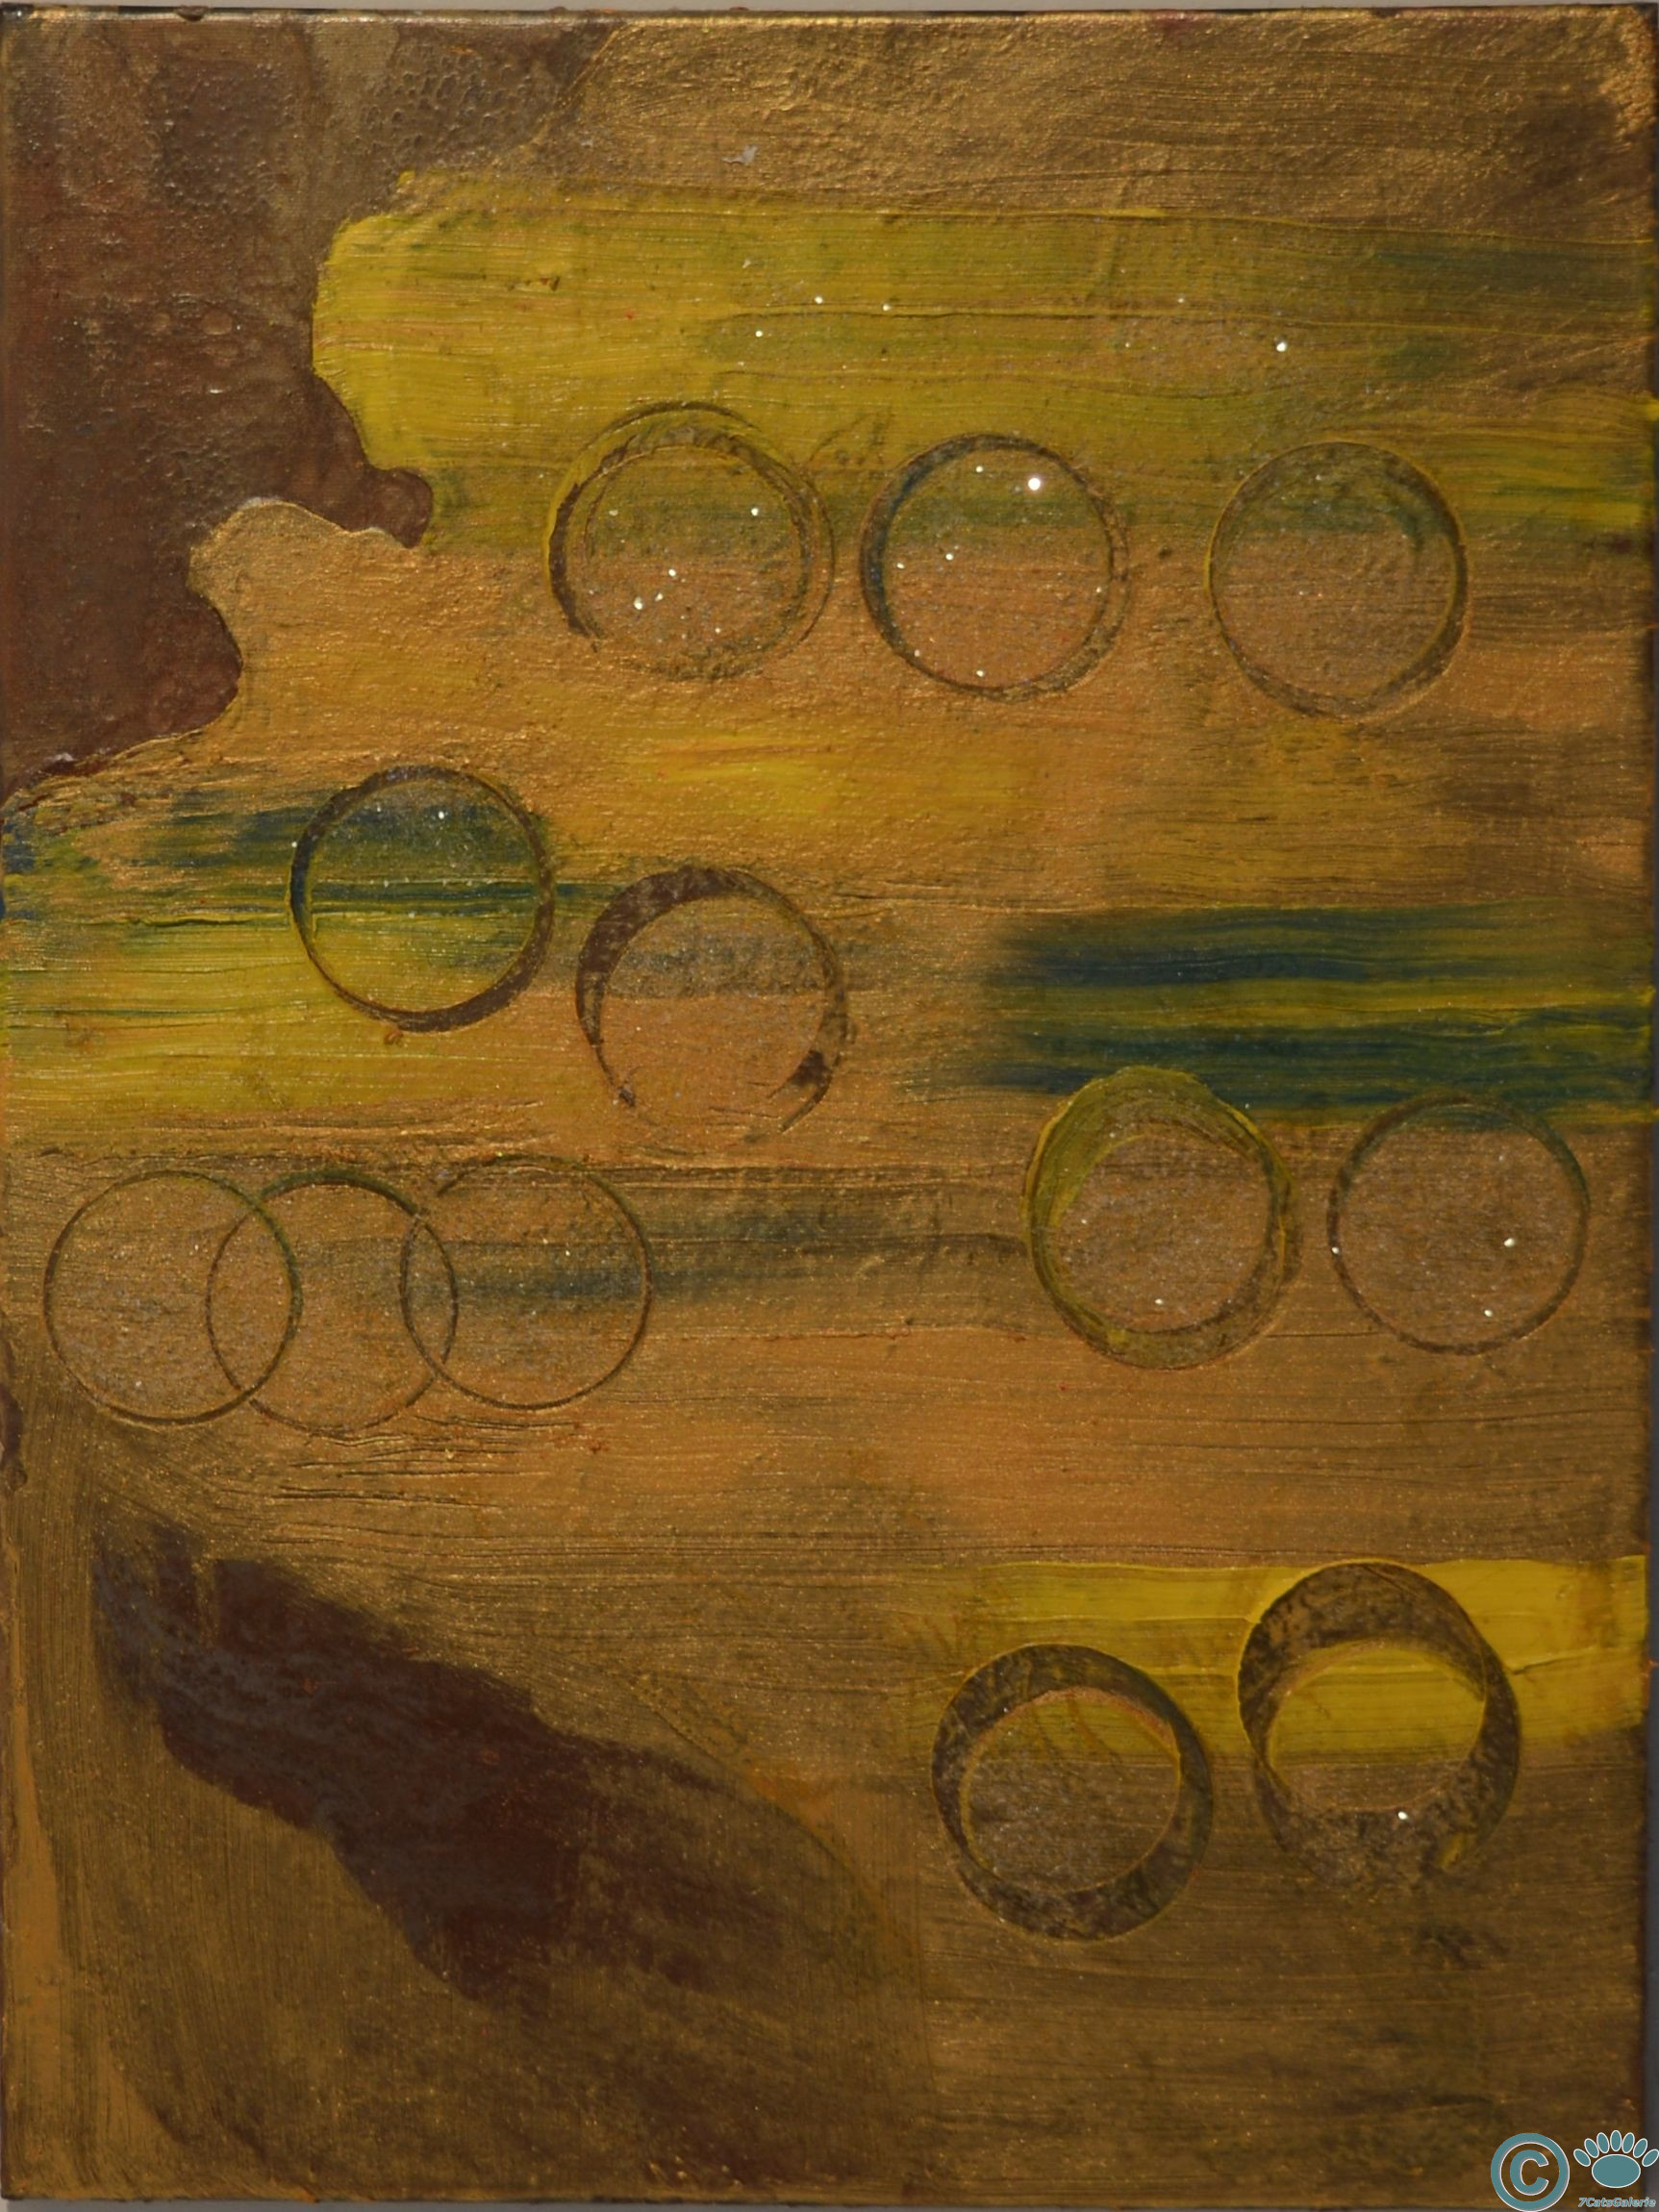 Circles on Gold (18" x 24")